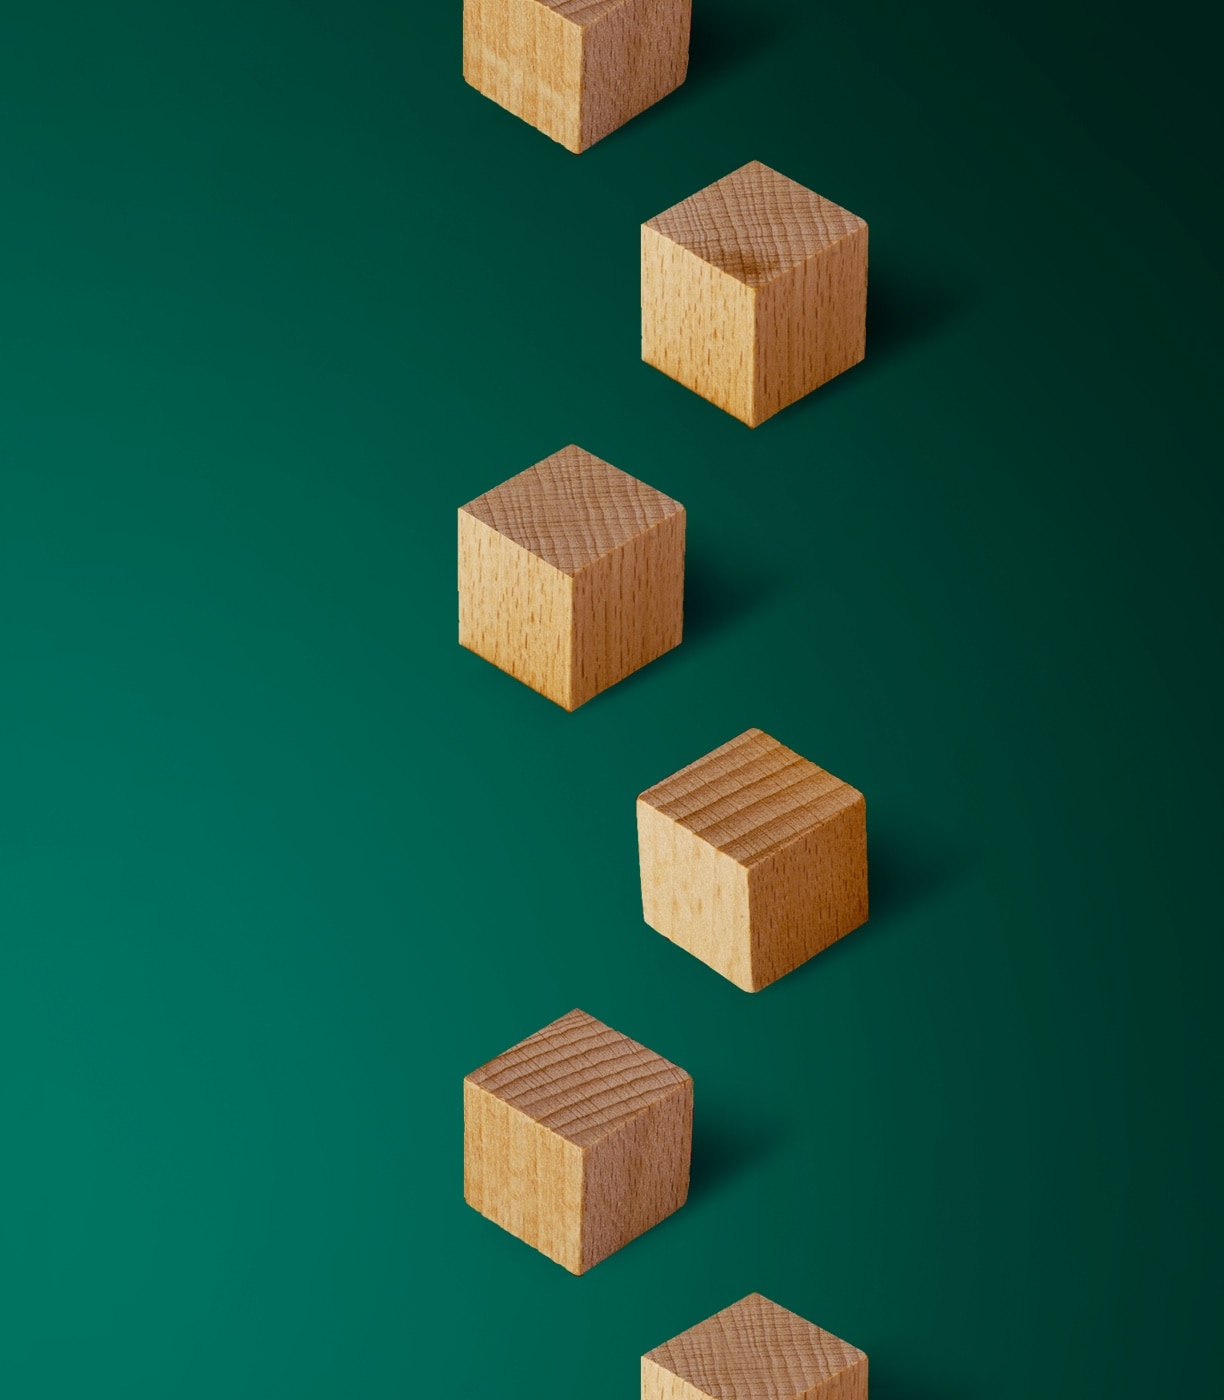 Wooden blocks arranged in a zigzag pattern.